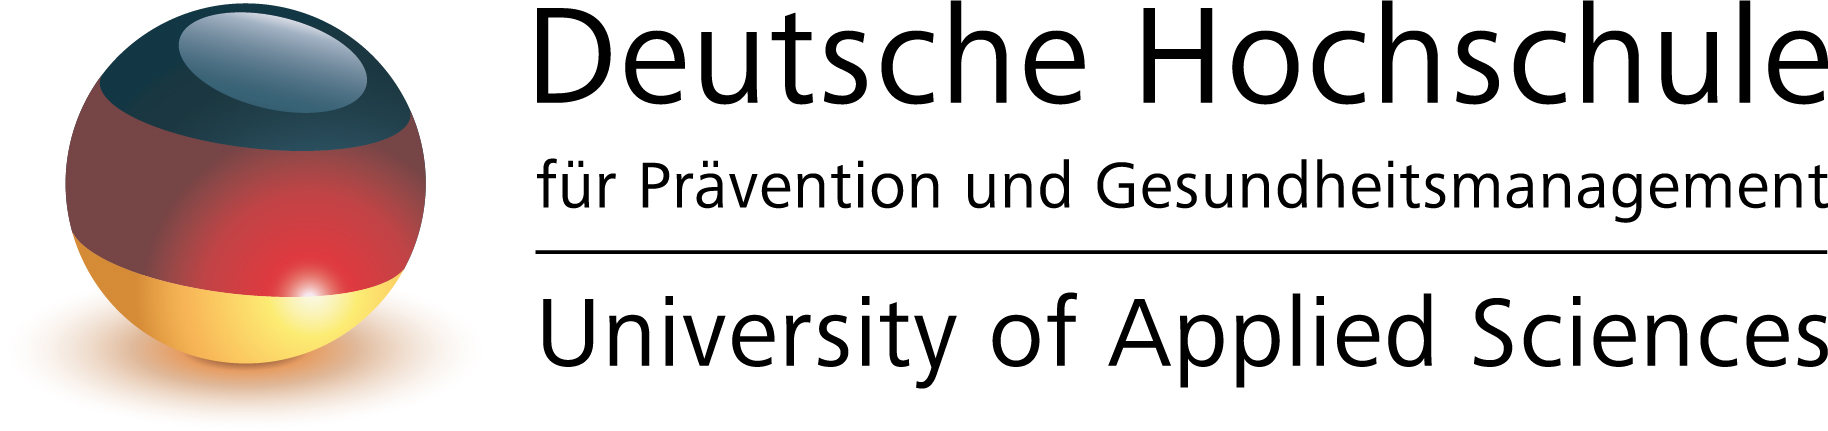 Deutsche Hochschule für Prävention und Gesundheitsmanagement - Studienzentrum Düsseldorf Logo